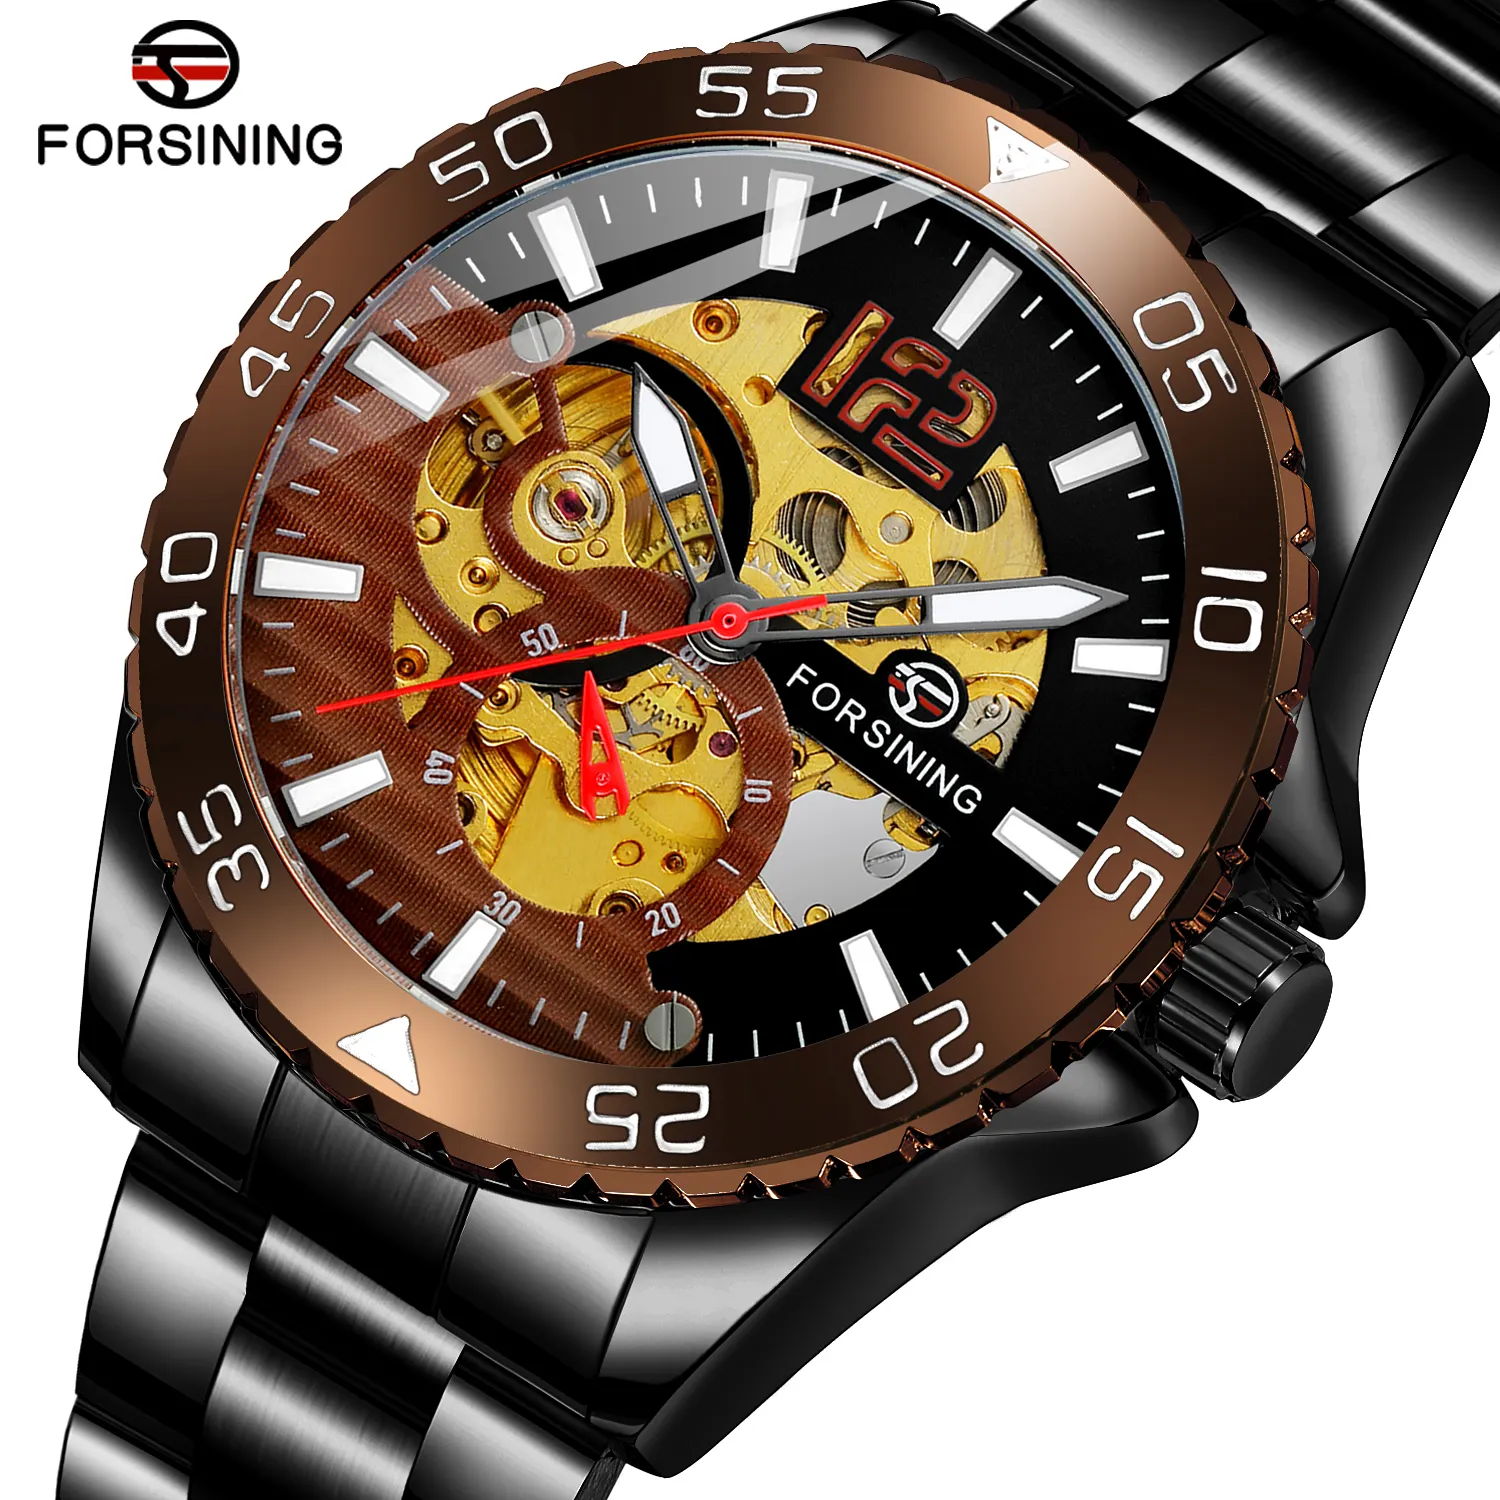 Forsining 8225 moda uomo di marca di lusso orologio da polso Pagani Design braccialetto d'oro digitale Casual orologio al quarzo